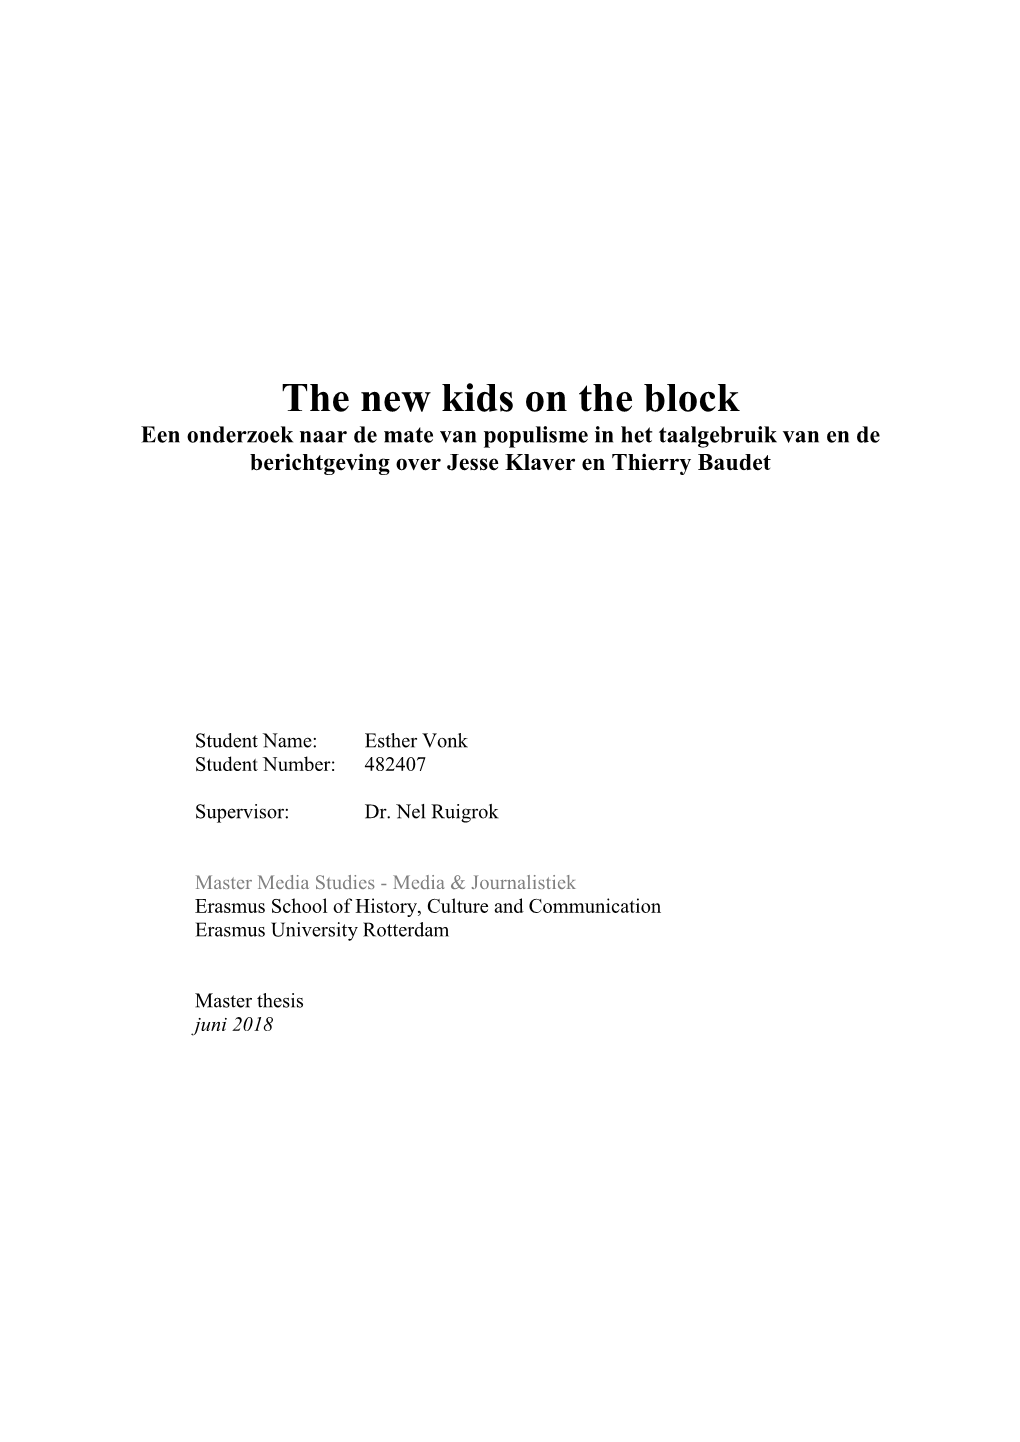 The New Kids on the Block Een Onderzoek Naar De Mate Van Populisme in Het Taalgebruik Van En De Berichtgeving Over Jesse Klaver En Thierry Baudet